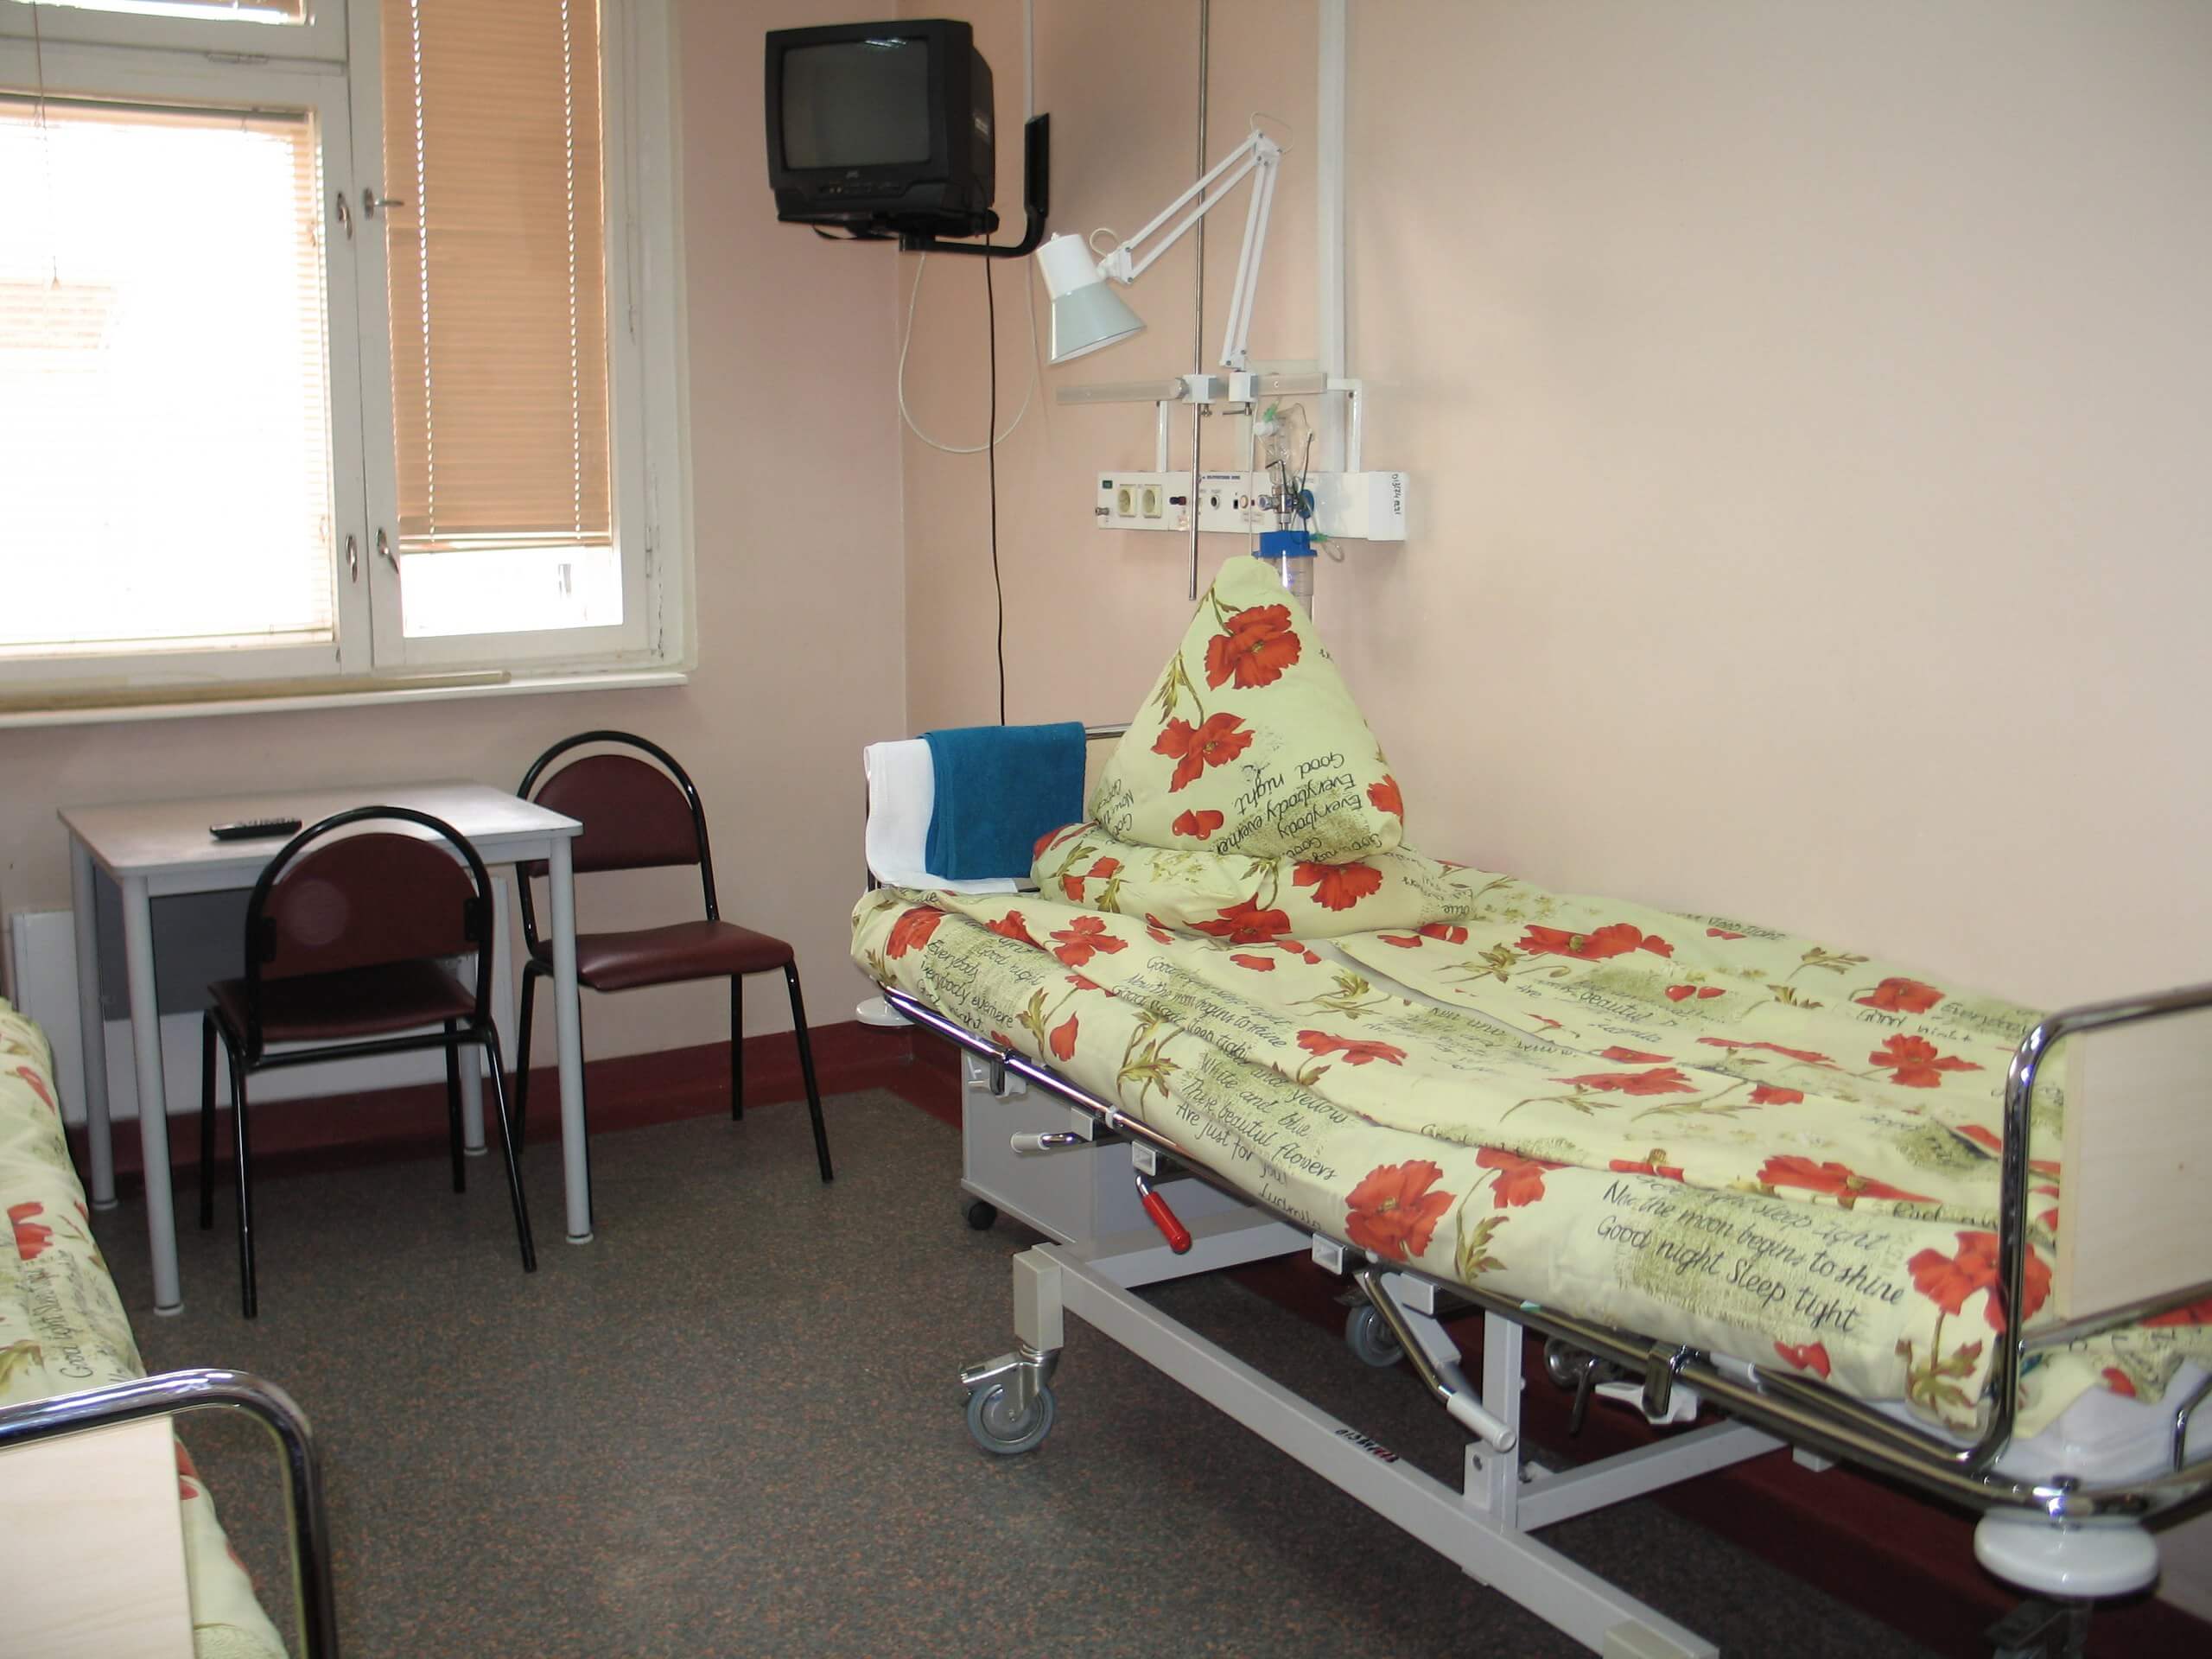 13 больница москва врачи